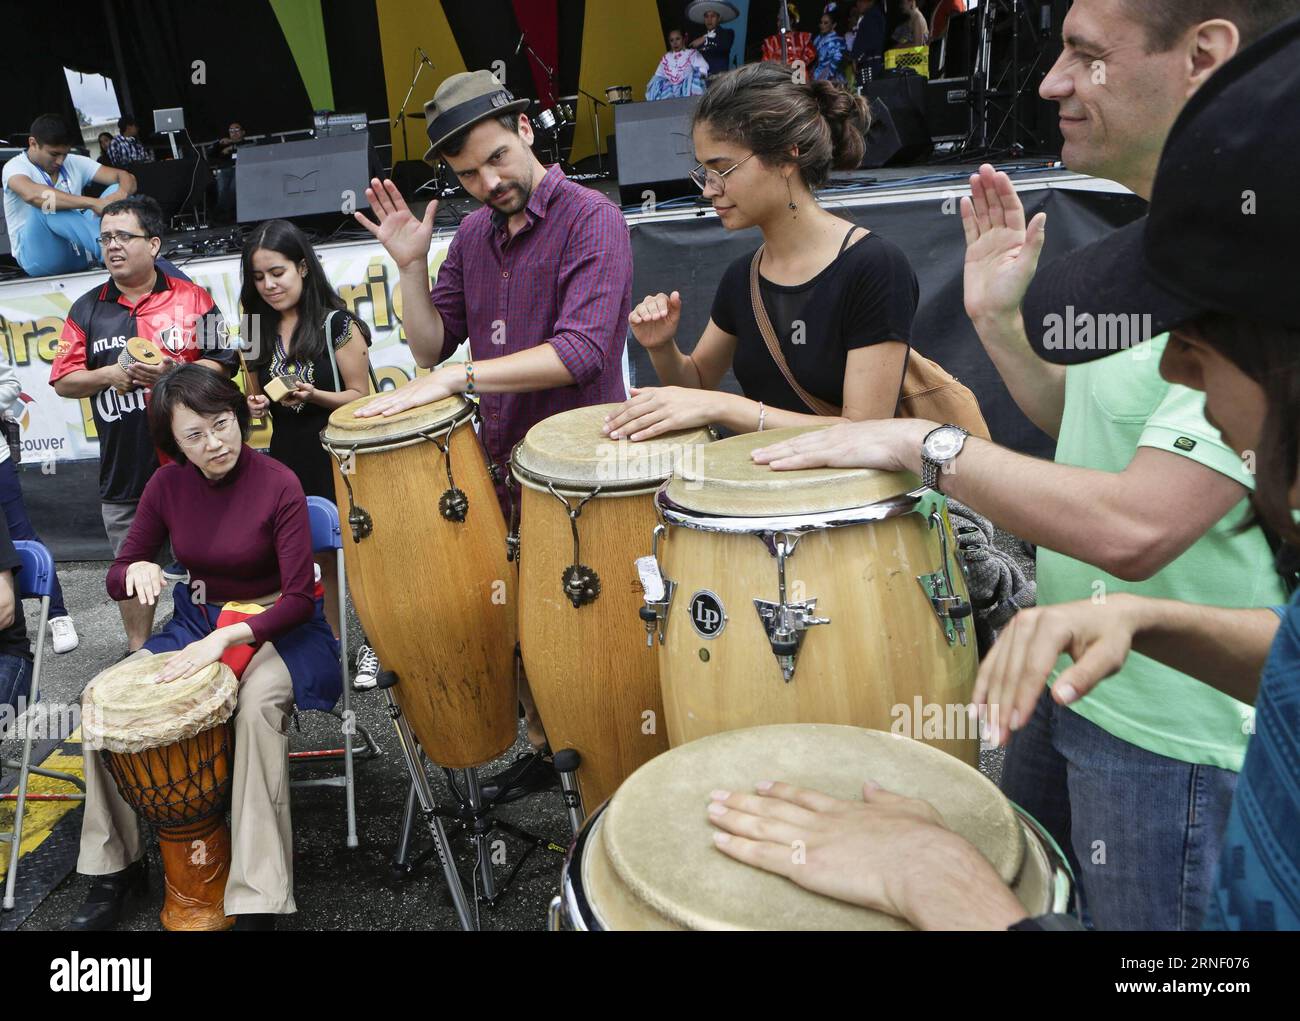 (160710) -- VANCOUVER, le 10 juillet 2016 -- des résidents participent à un atelier sur les tambours en Amérique latine lors de l'événement Carnaval del sol à Vancouver, Canada, le 9 juillet 2016. L’événement présente et célèbre la culture latino-américaine par le biais de différentes activités visant à établir des ponts de compréhension avec d’autres communautés. Liang sen) CANADA-VANCOUVER-CARNAVAL DEL sol HarrisonxHa PUBLICATIONxNOTxINxCHN Vancouver juillet 10 2016 les résidents participent à un atelier de tambours en Amérique latine pendant l'événement Carnaval Del sol à Vancouver Canada juillet 9 2016 l'événement présente et célèbre la culture latino-américaine Banque D'Images